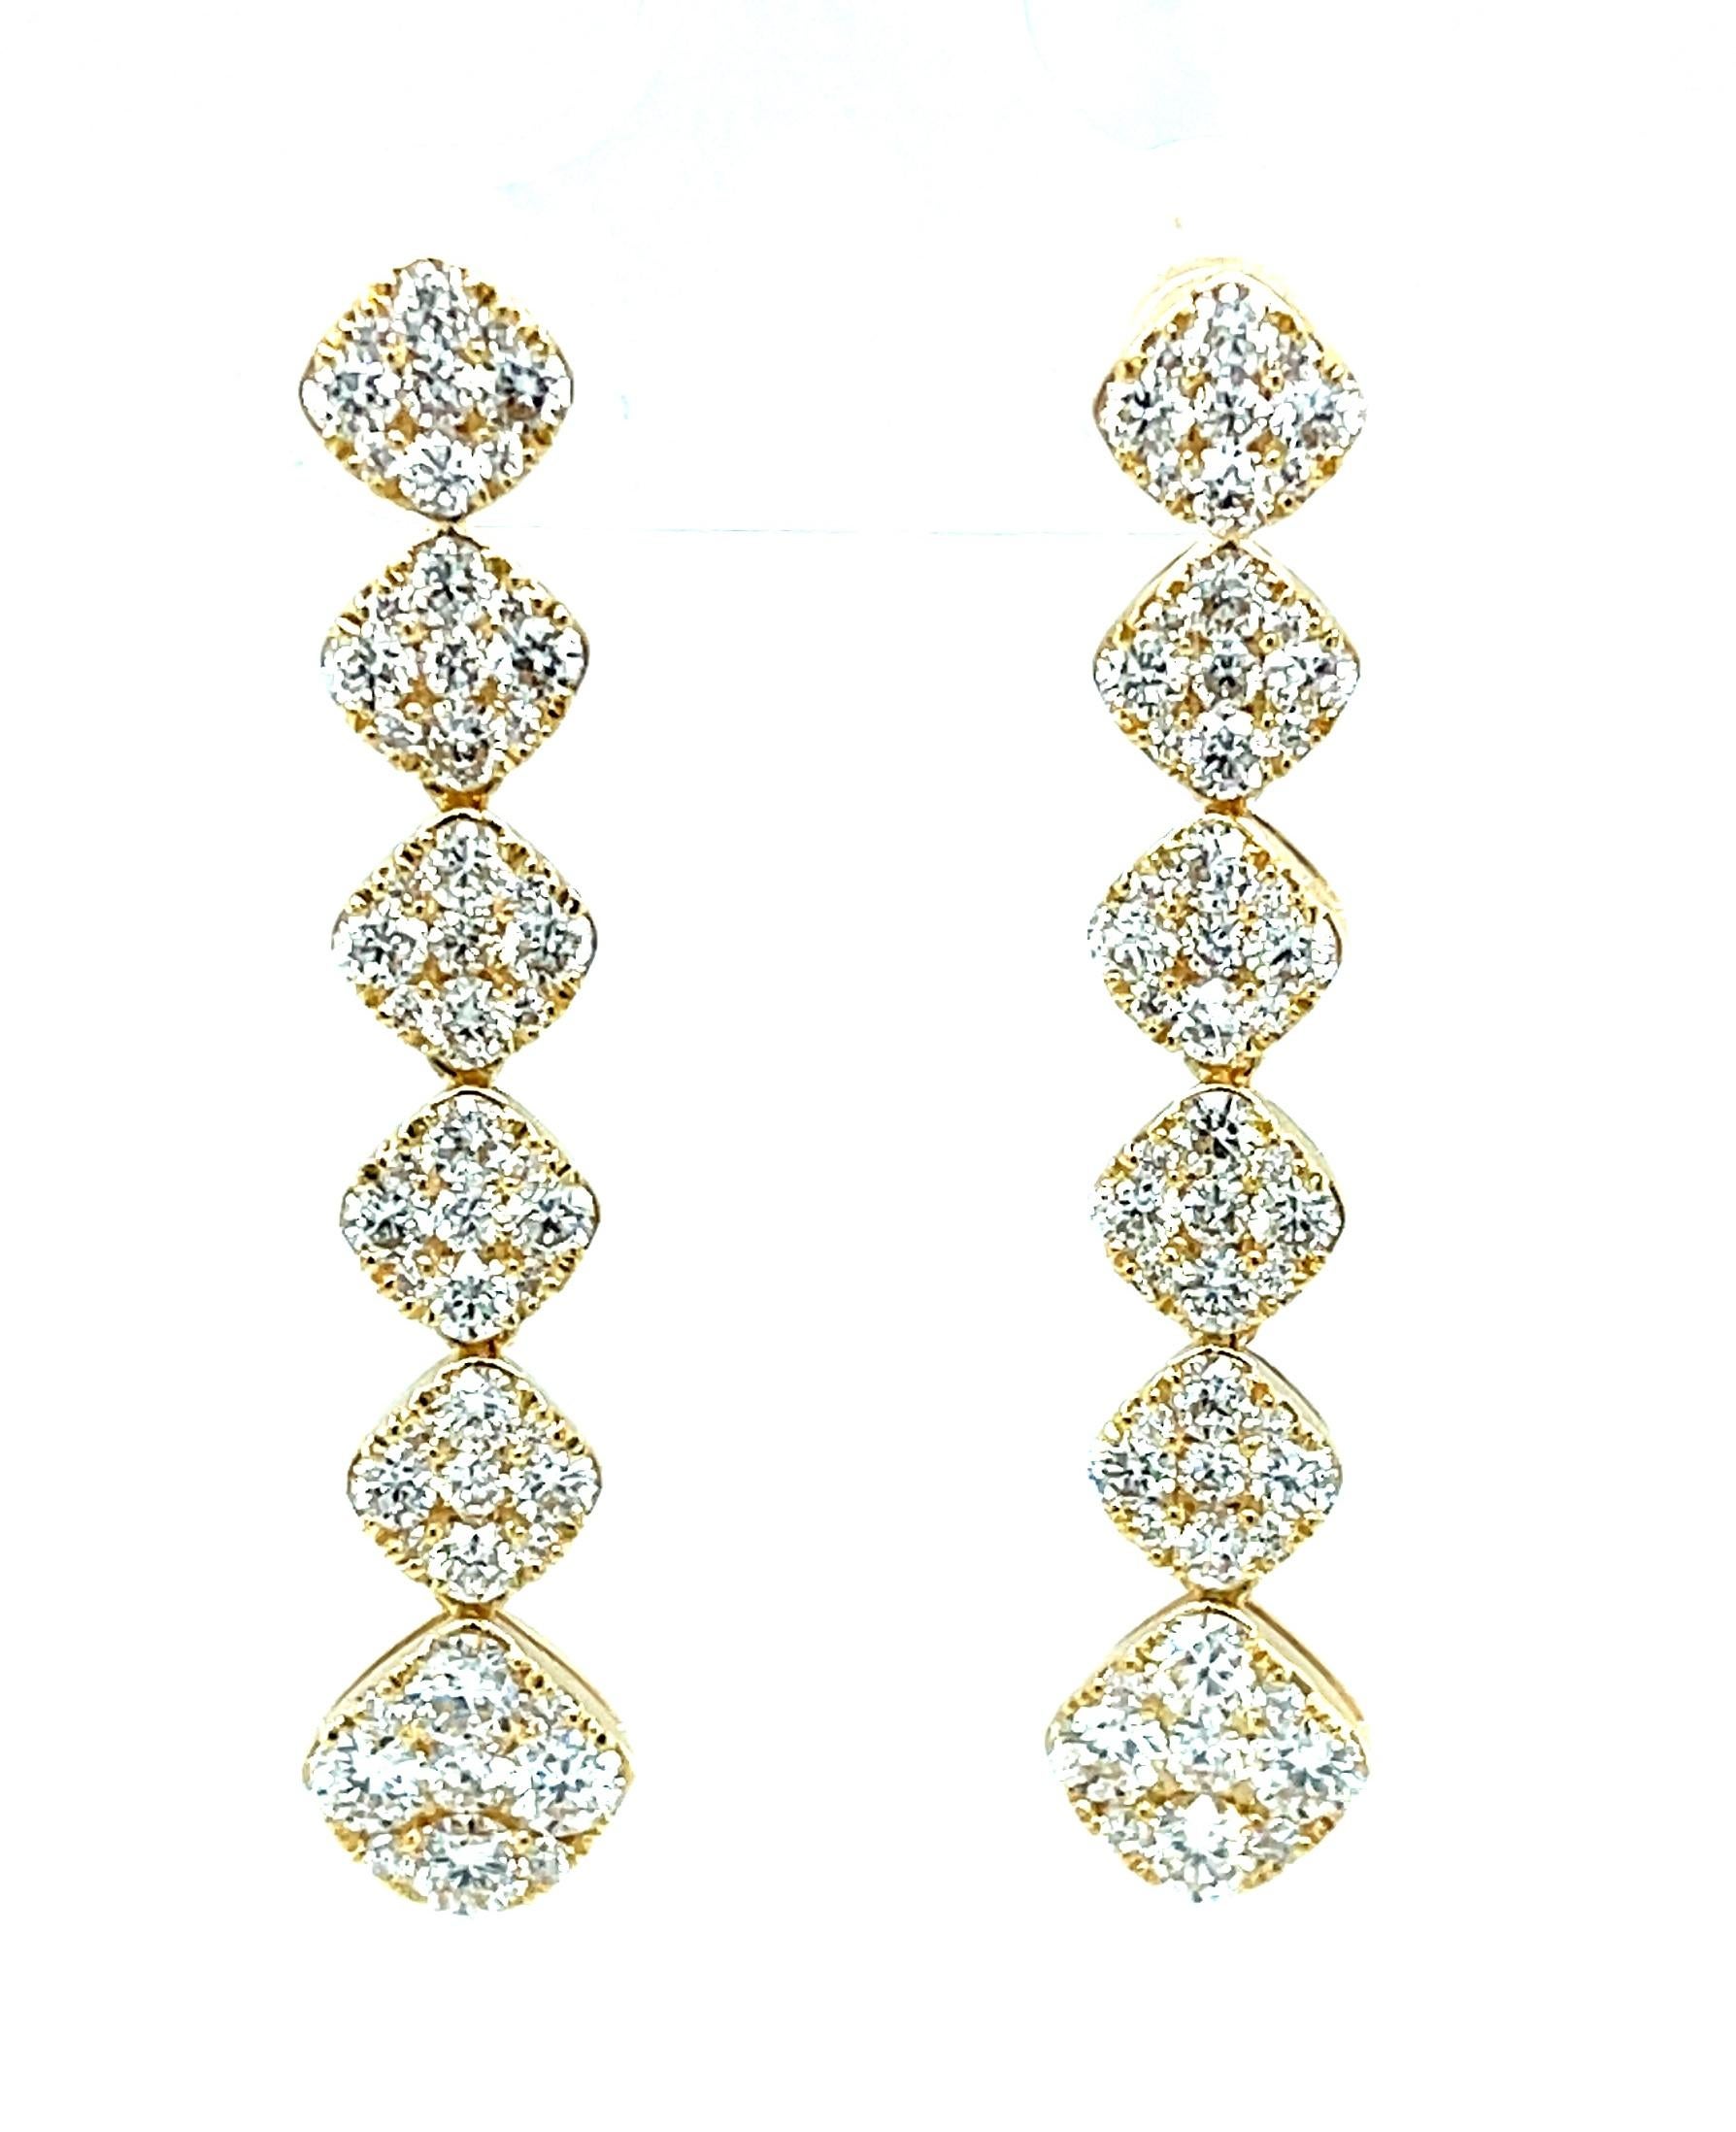 Diese auffälligen, mit Diamanten besetzten Ohrringe aus 18 Karat Gelbgold sind die Definition von funkelnder Eleganz! Sie sind mit 2,49 Karat feinster runder, weißer Brillanten in einer diamantförmigen Fassung aus 18 Karat Gelbgold besetzt. Die